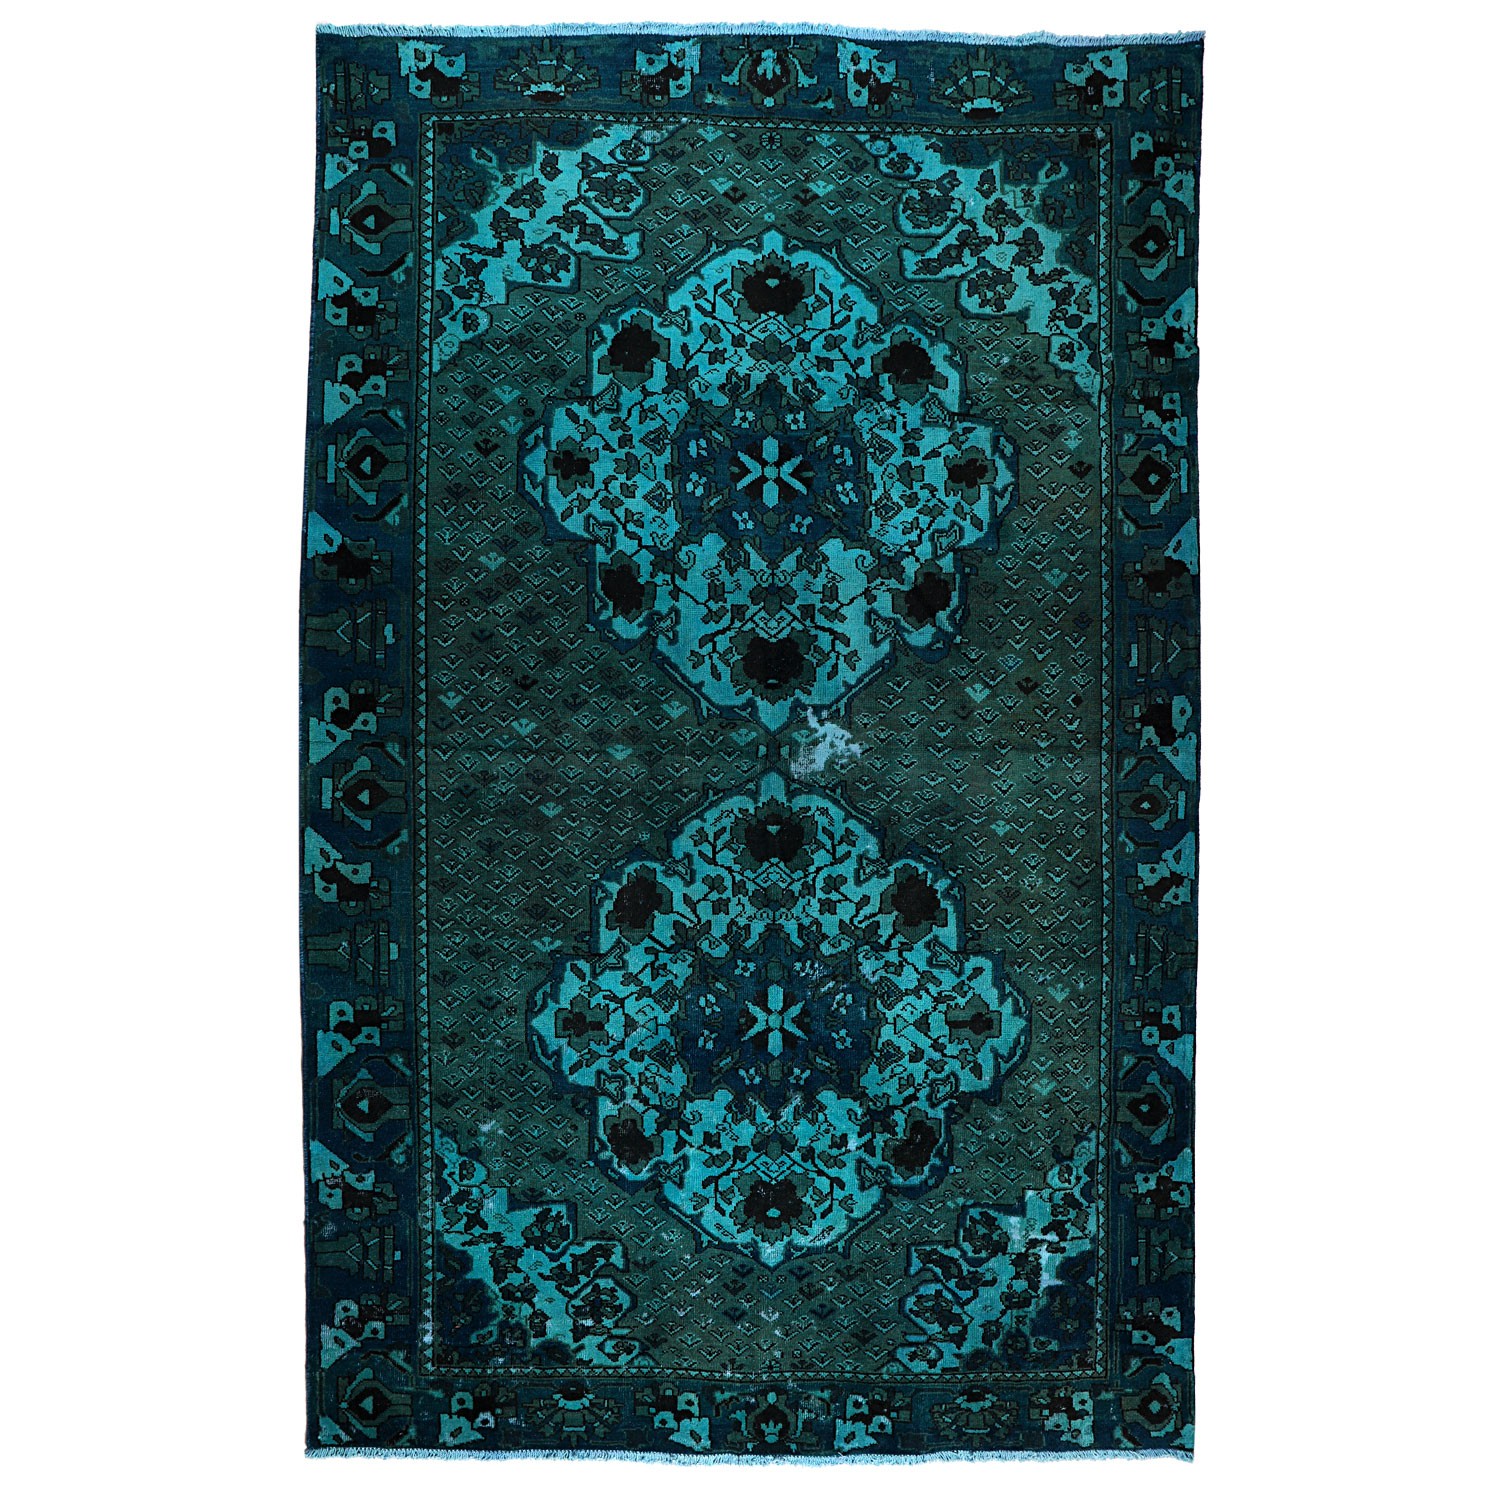 Hand-woven carpet